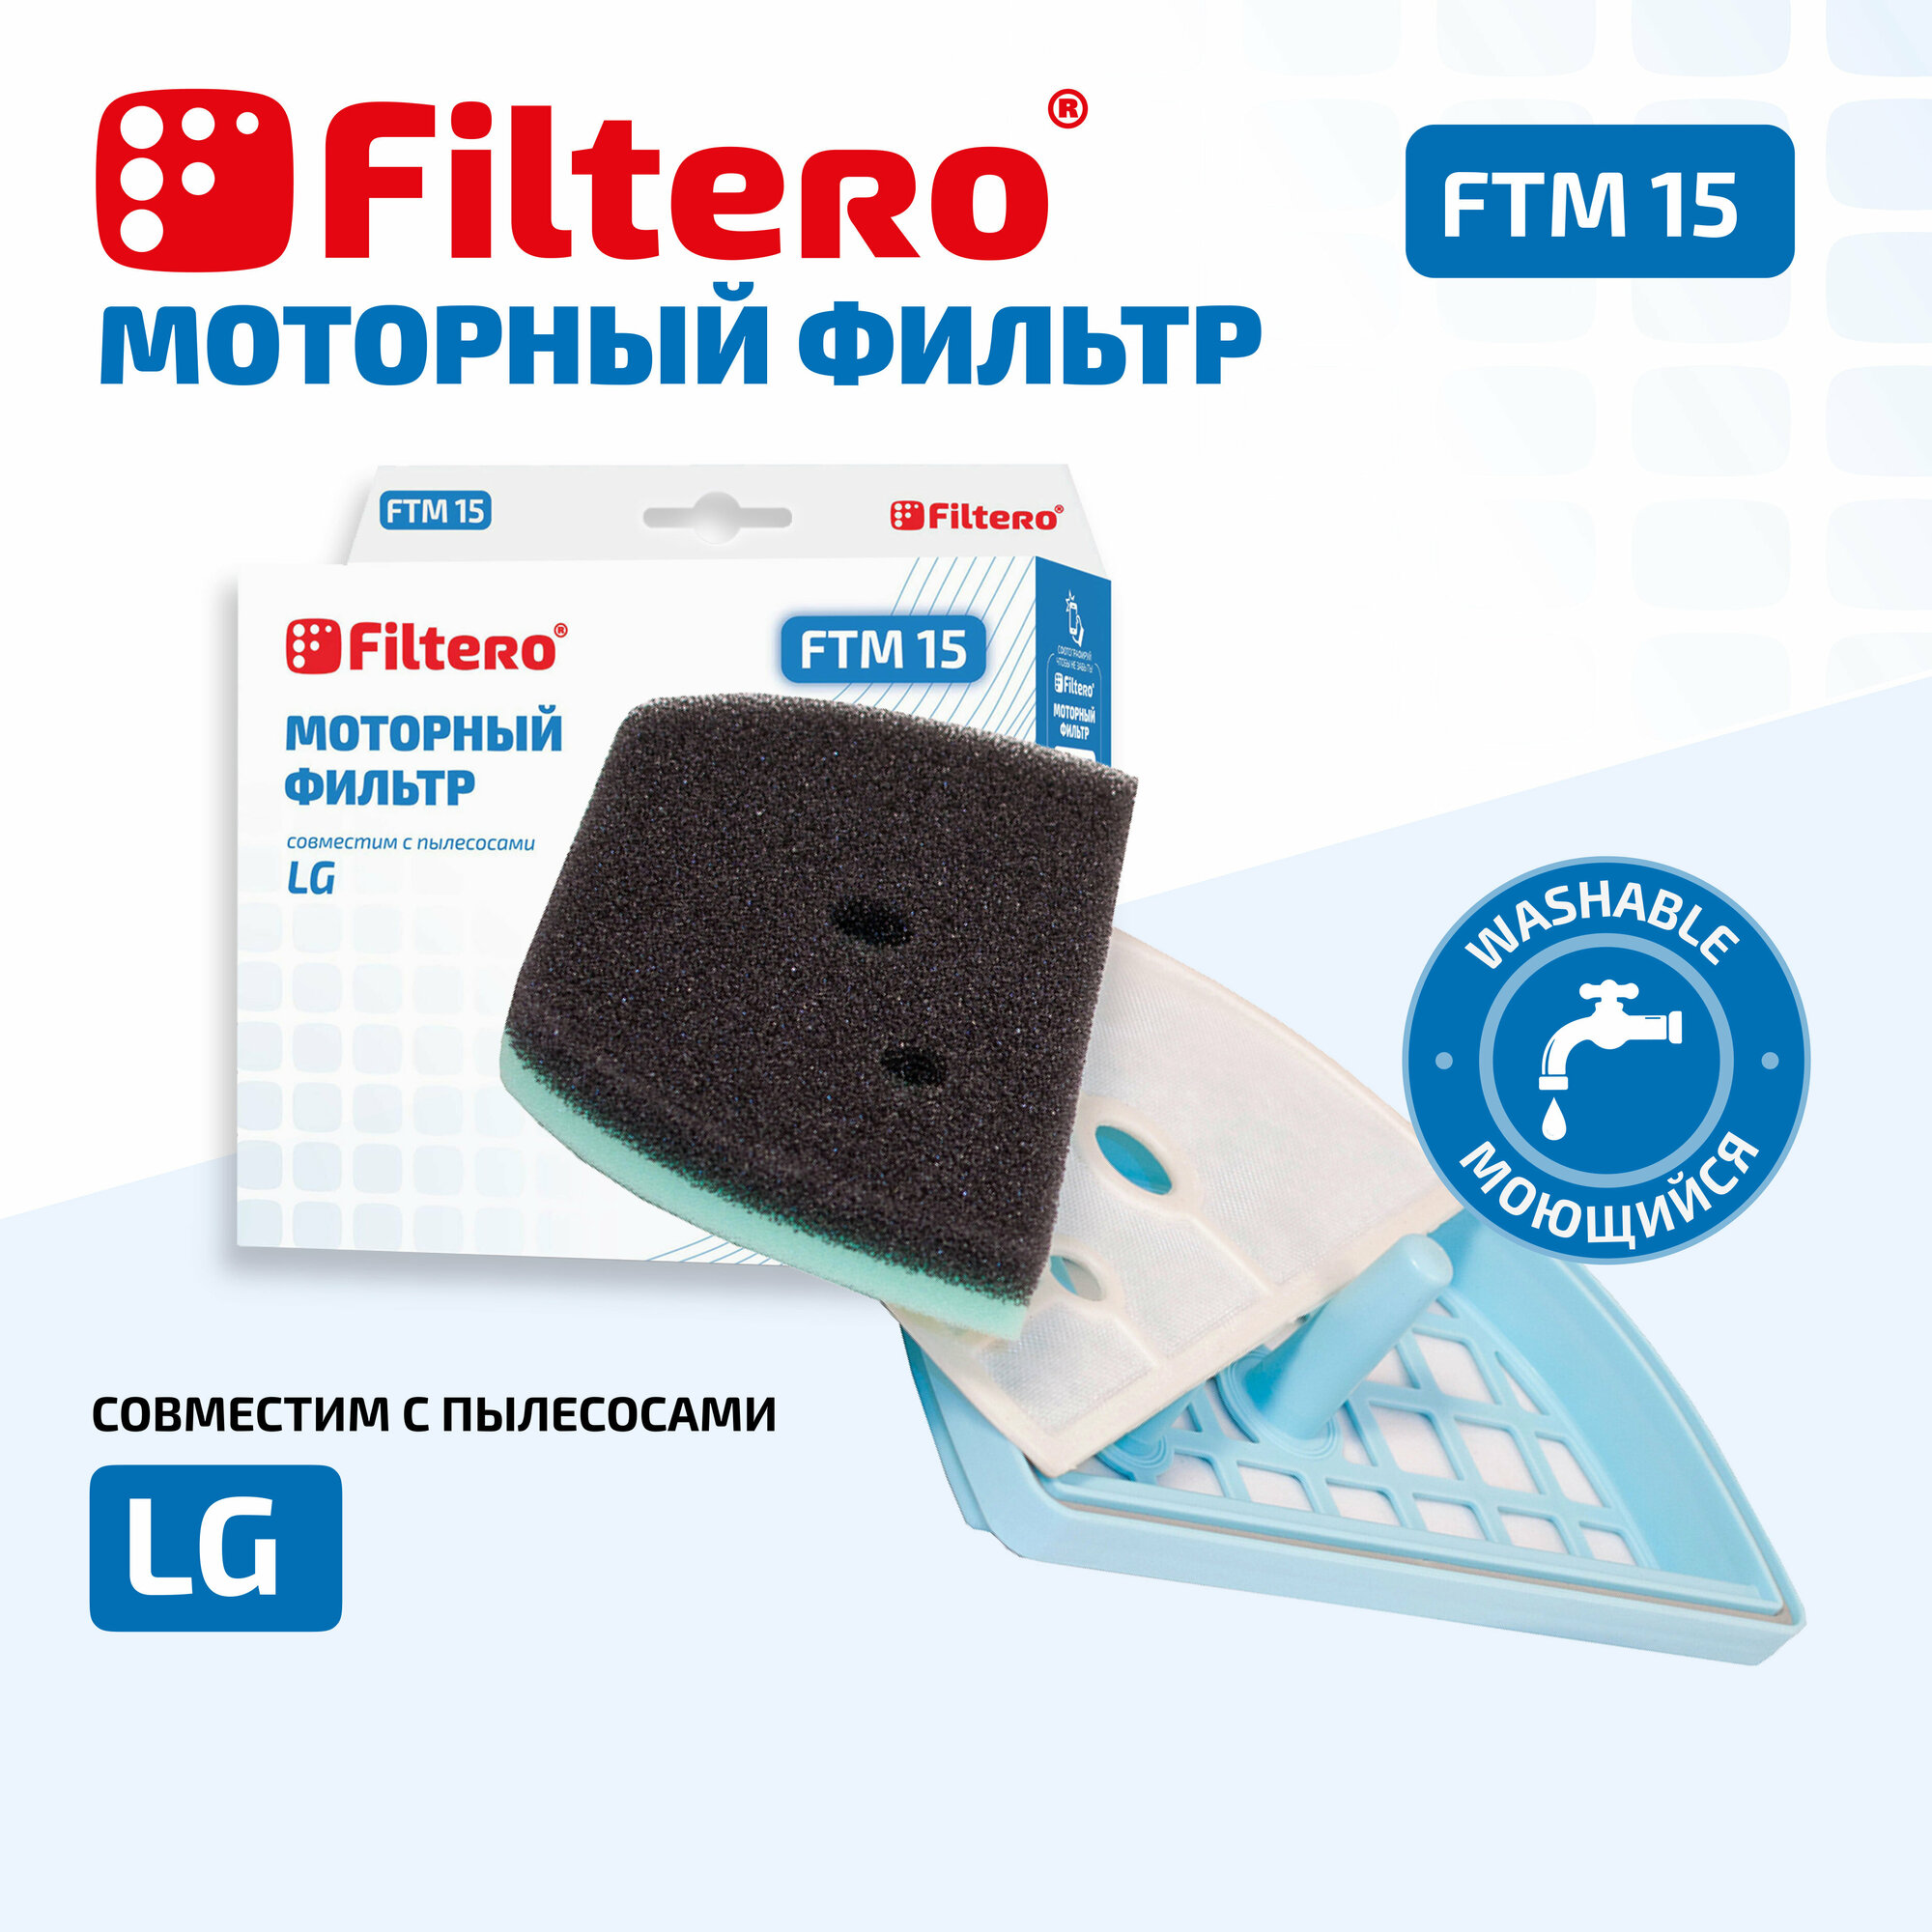 Фильтр Filtero FTM 15 (LG)